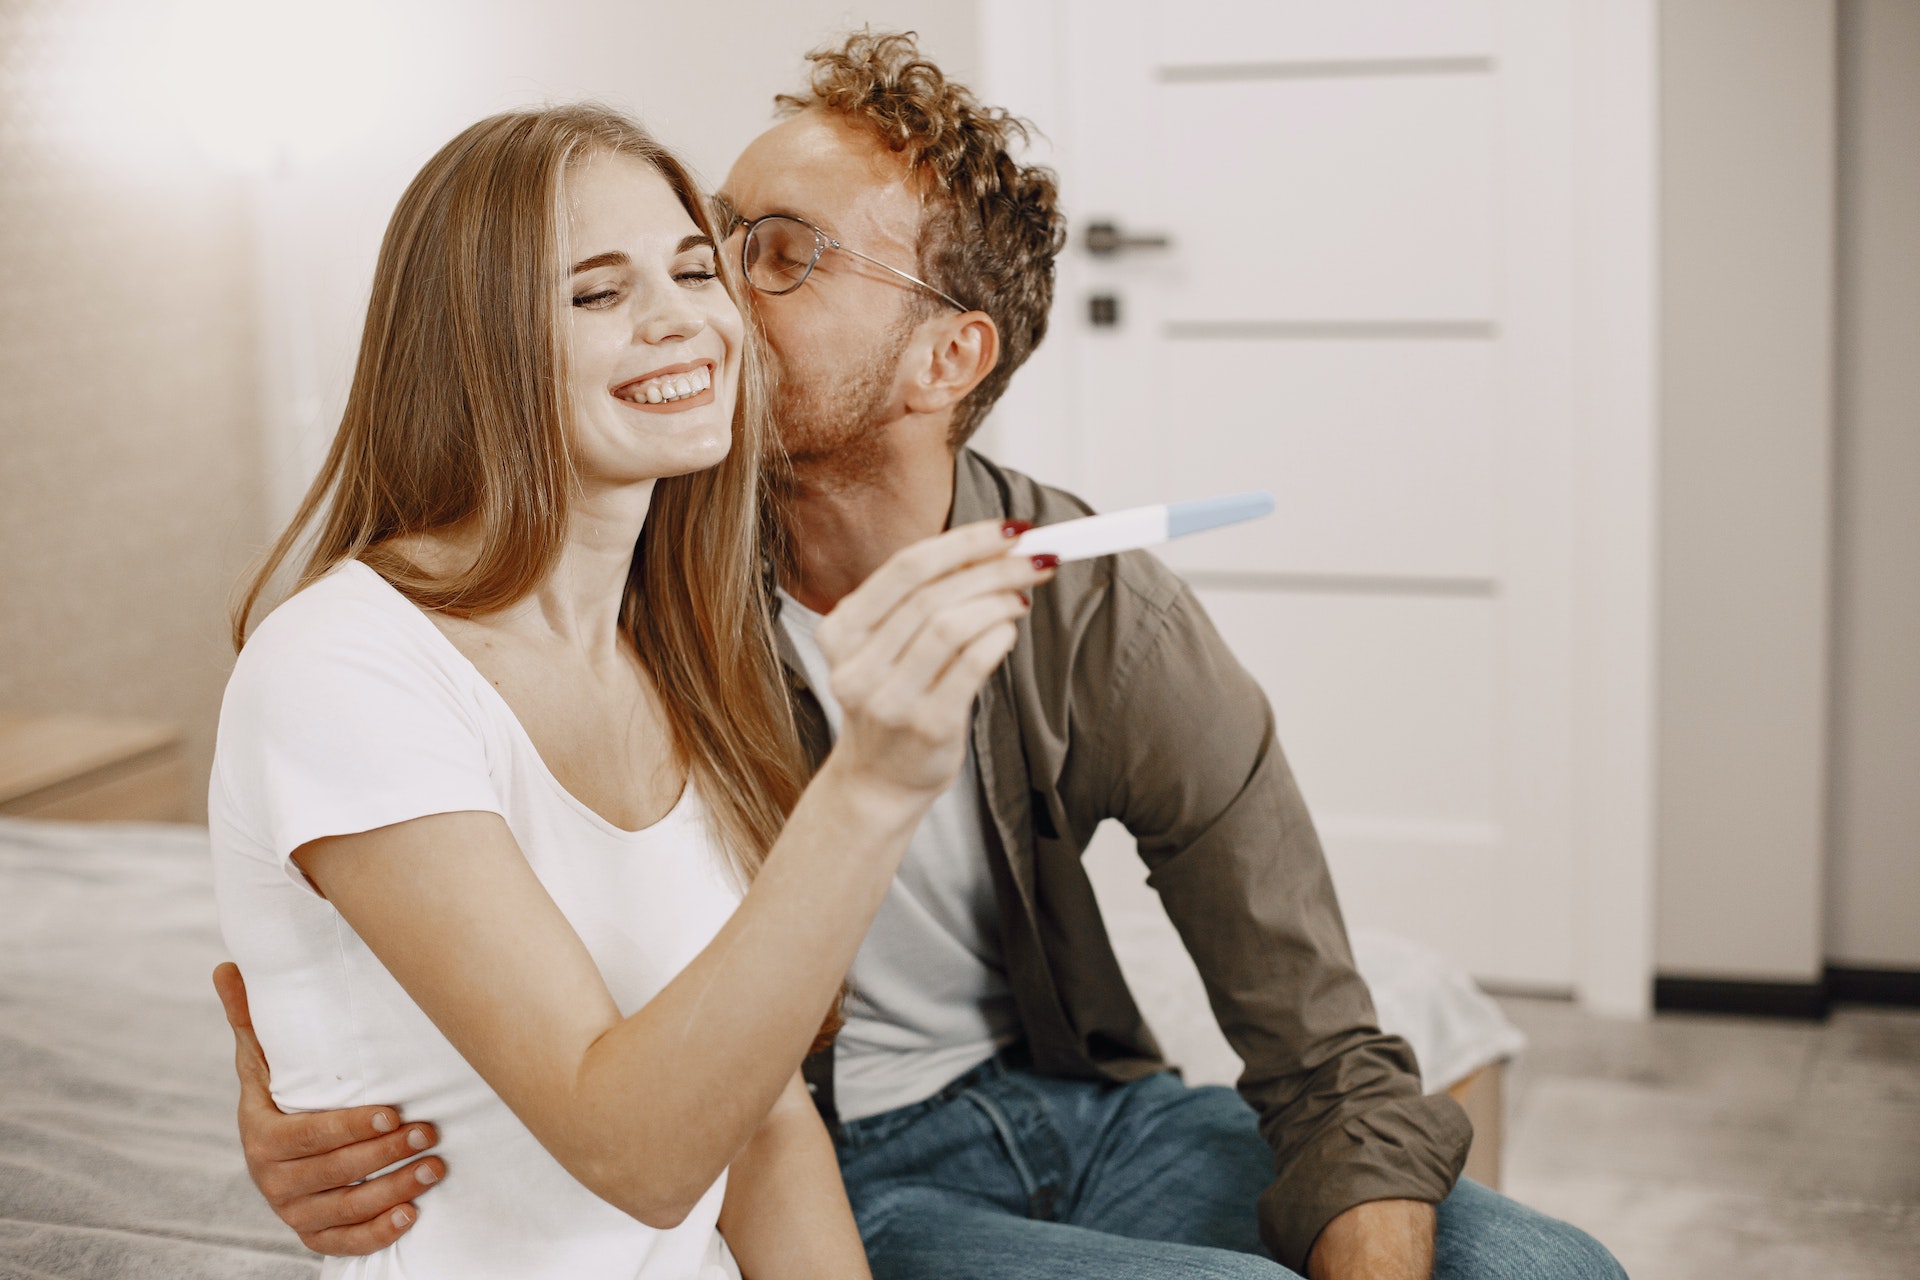 Una mujer sostiene un kit de prueba de embarazo mientras un hombre la besa. | Foto: Pexels